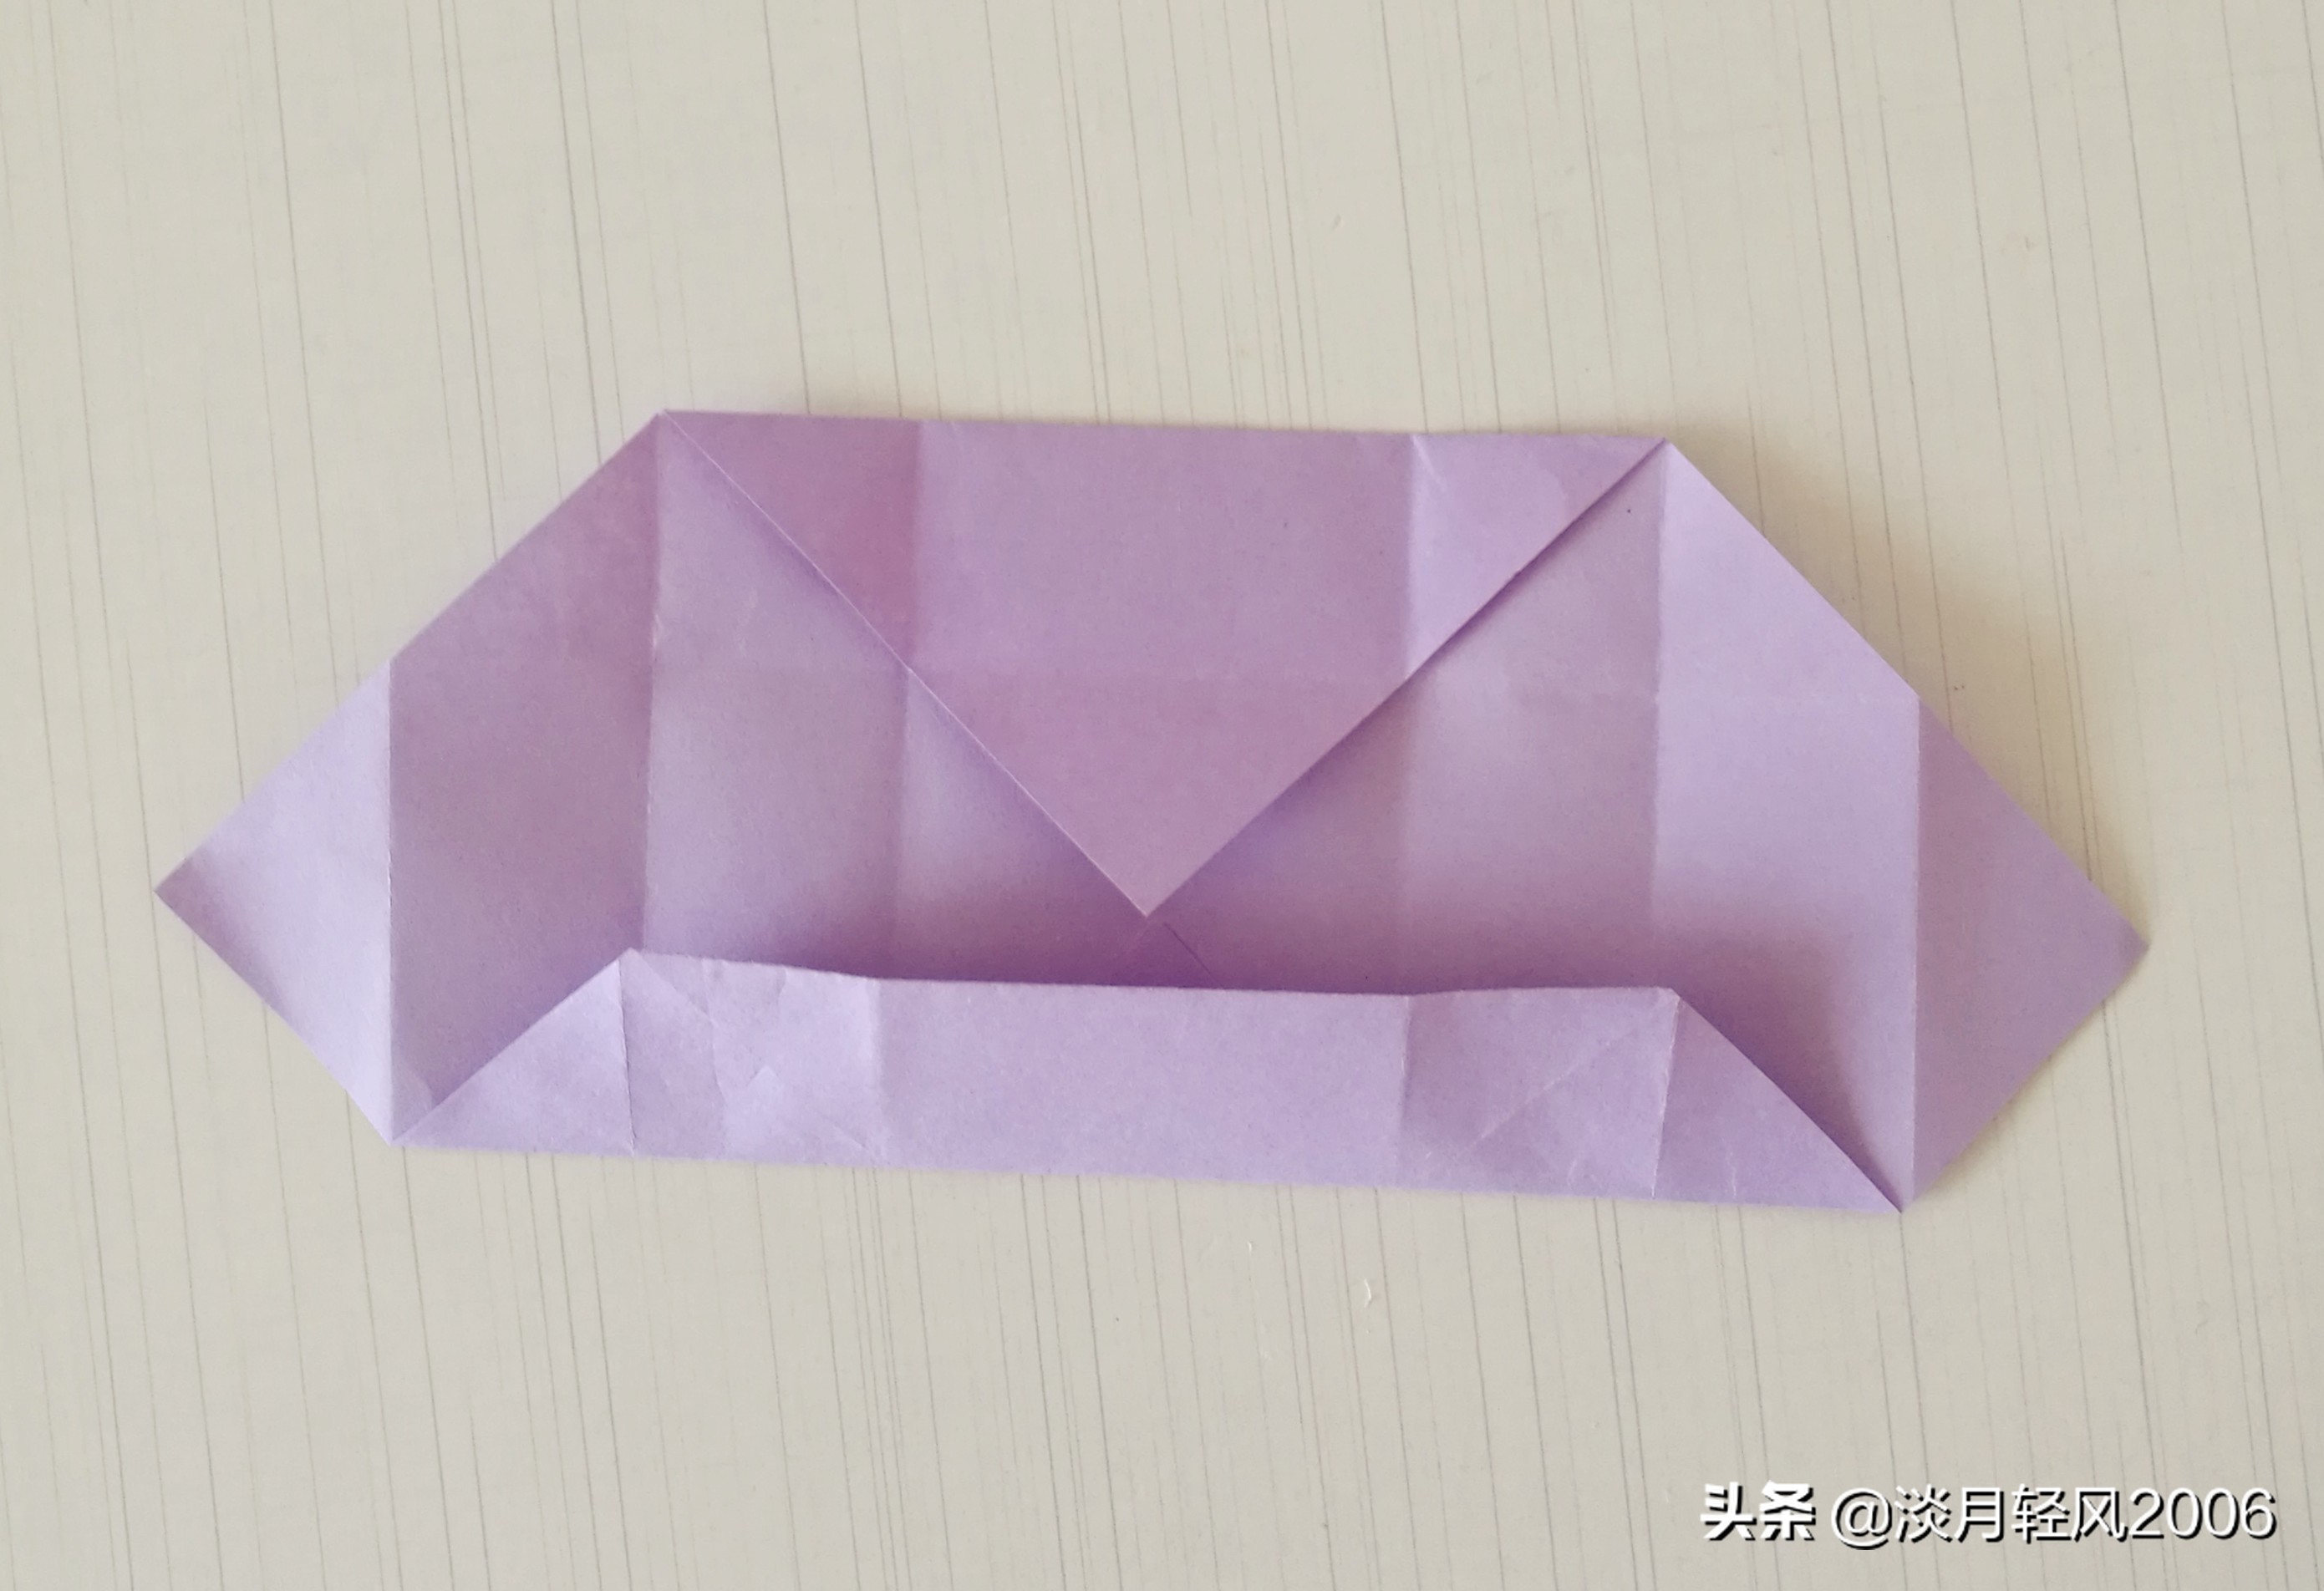 用一张纸折几下两分钟做一个小盒子,很实用的小手工,有制作过程